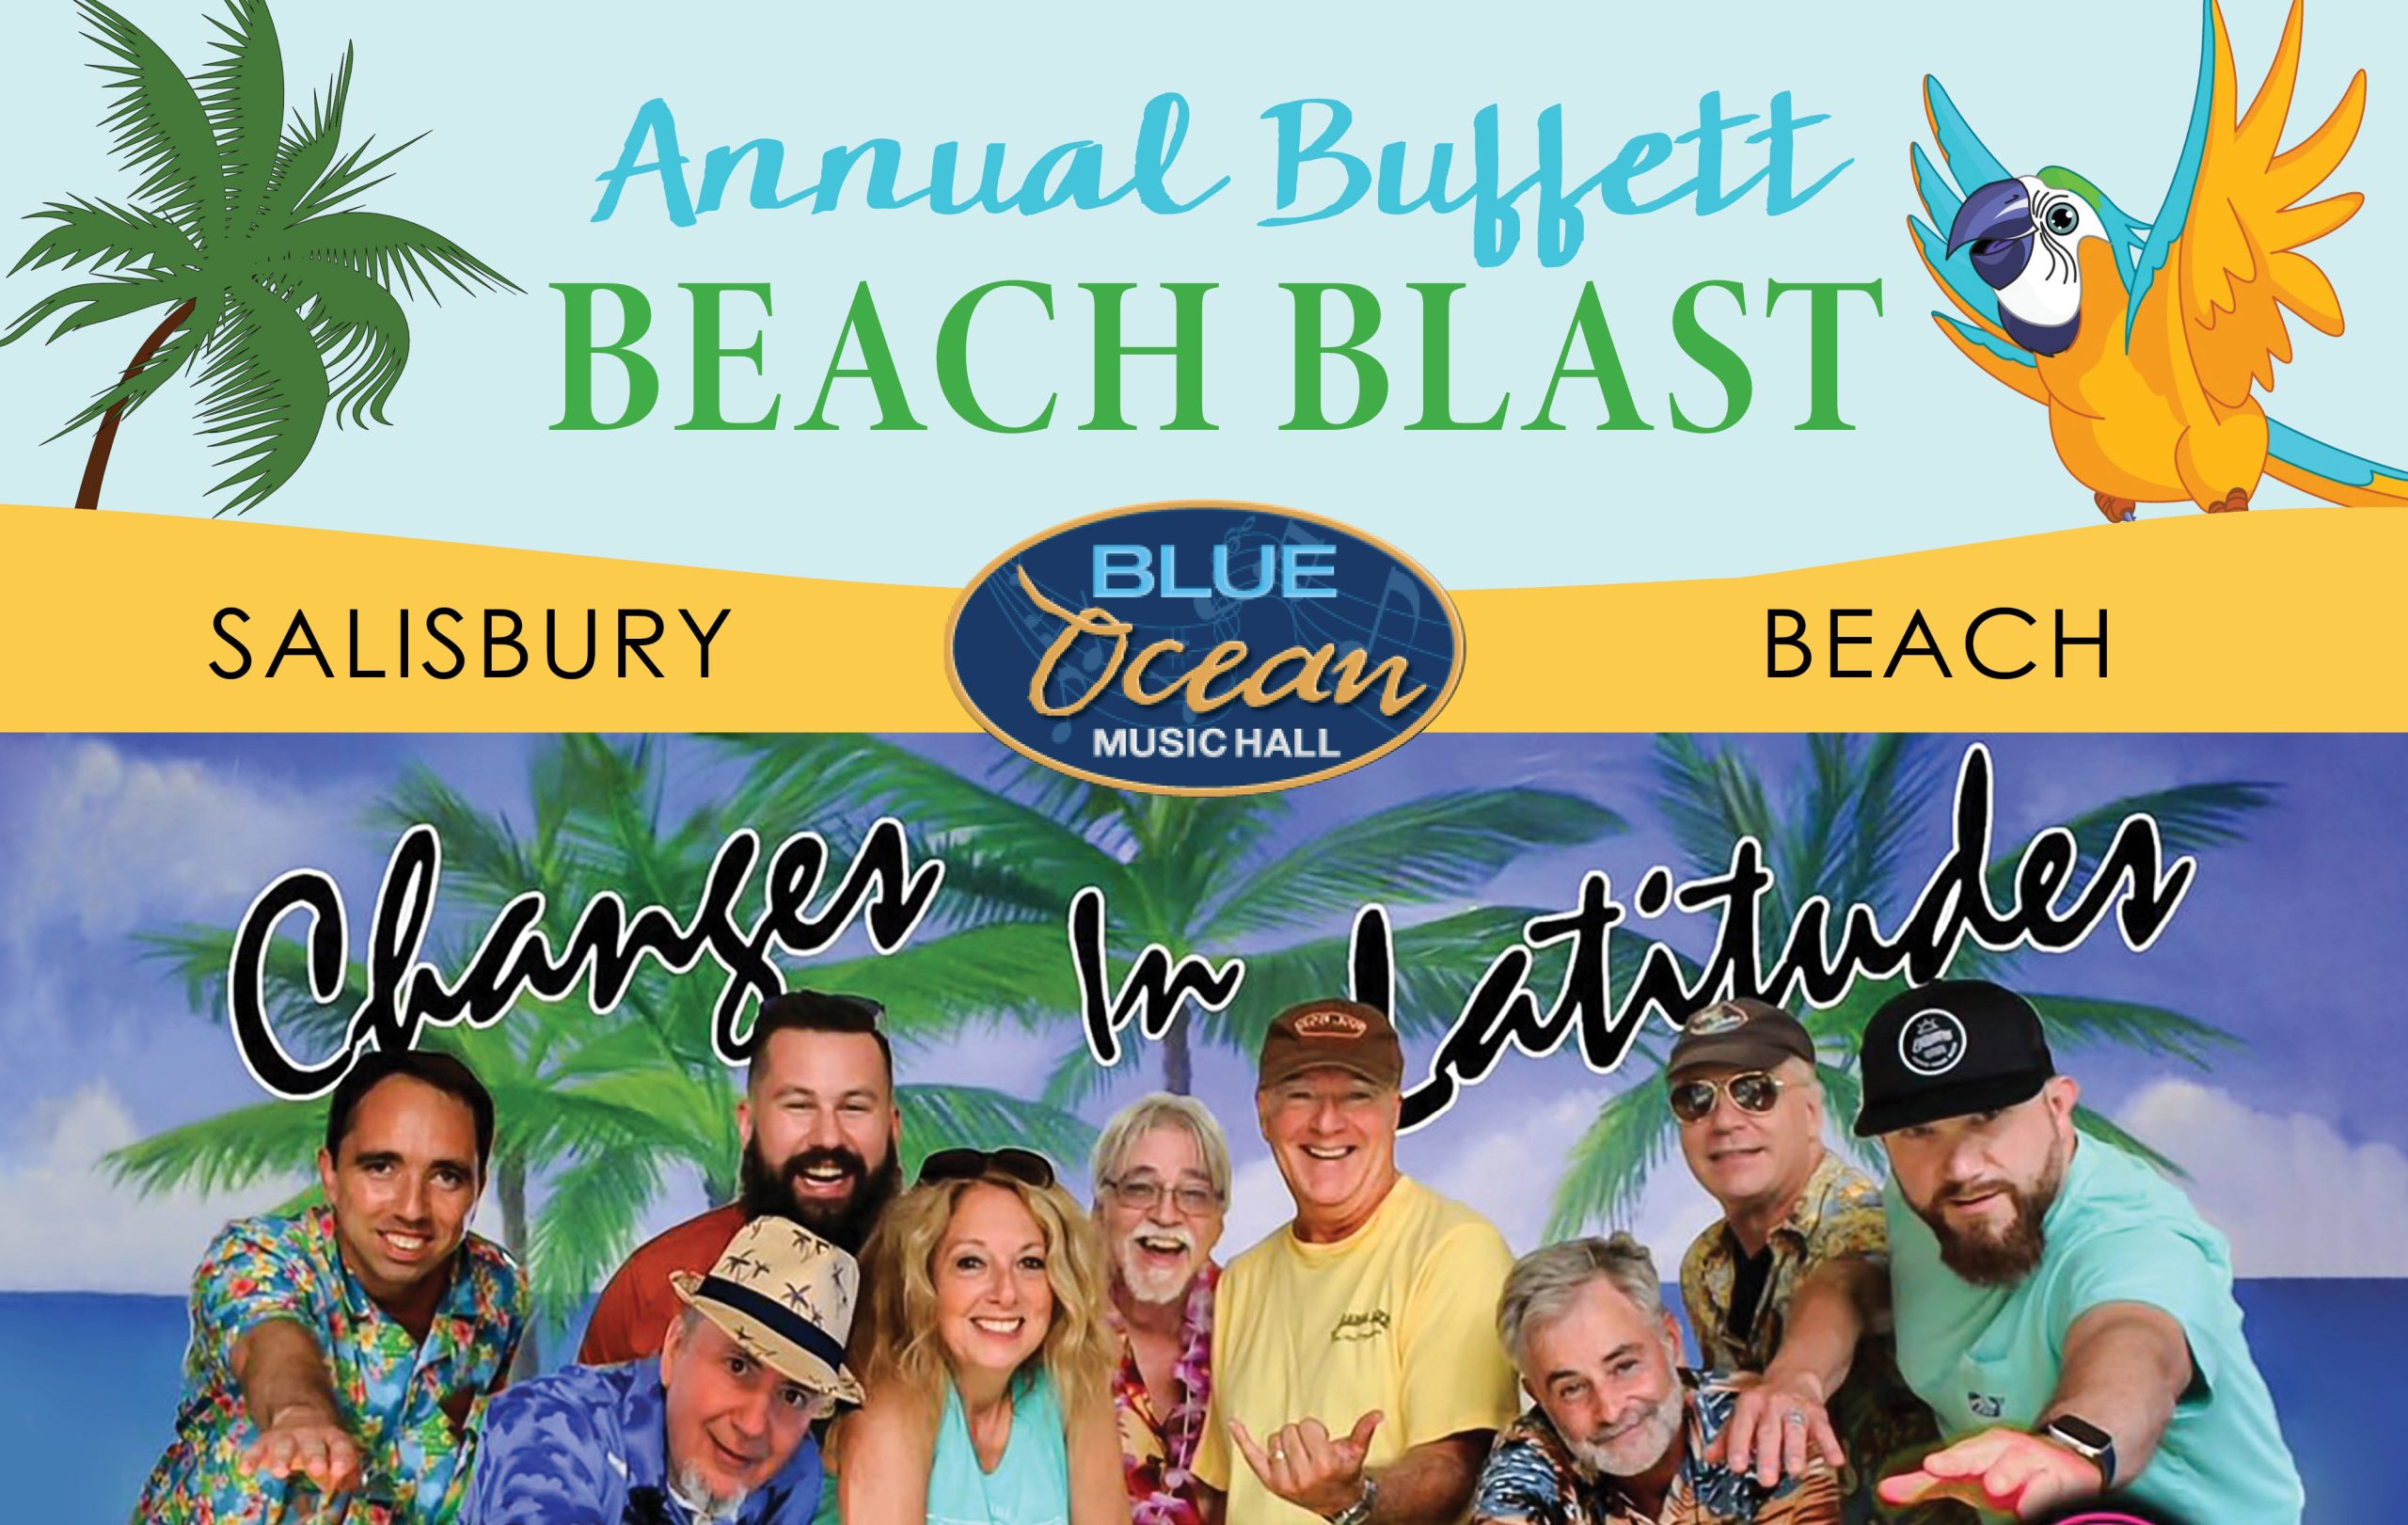 15th Annual Buffett Beach Blast